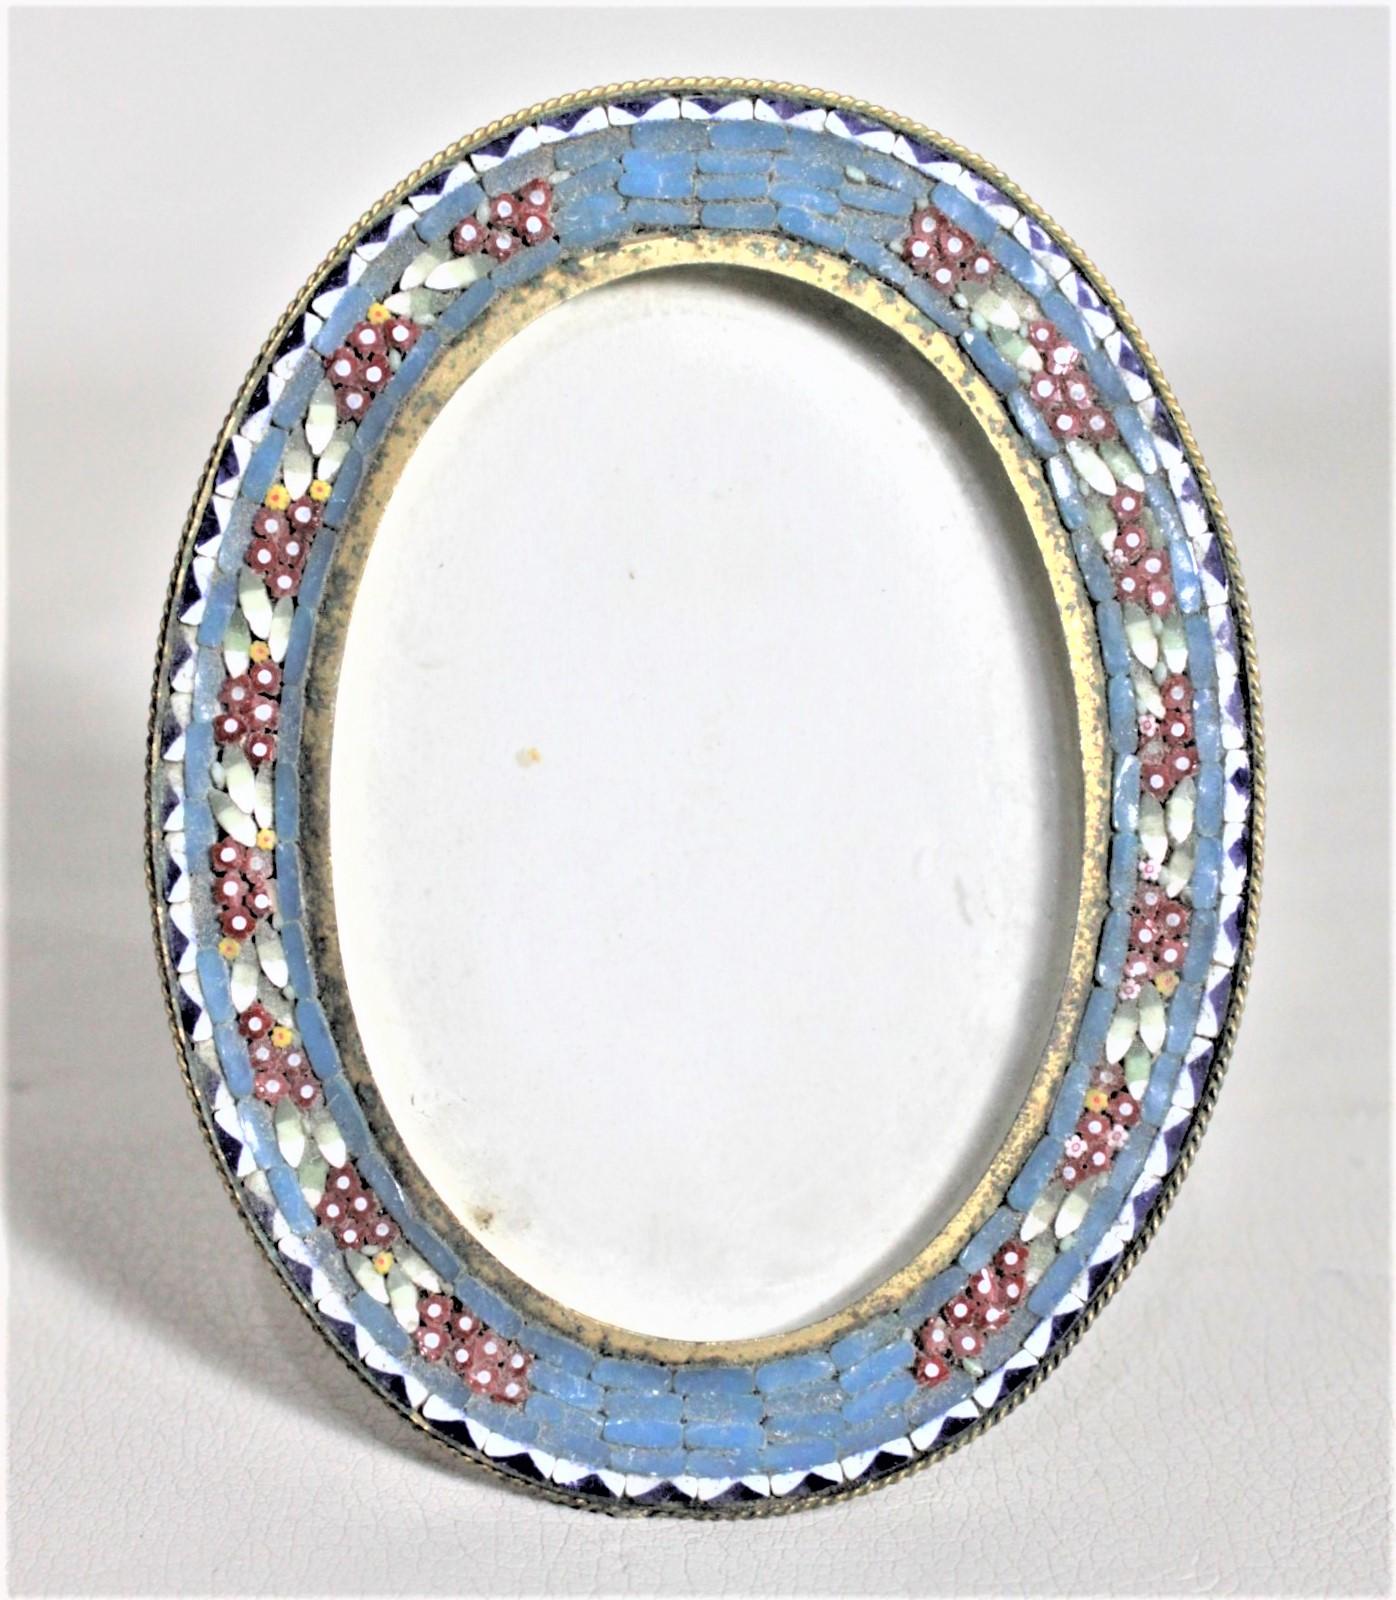 Ce petit cadre ovale en verre d'art et en laiton n'est pas signé, mais on suppose qu'il a été fabriqué en Italie vers 1920. Le cadre est composé d'un cadre en laiton avec un cannage en verre d'art sur la face avant fait d'une bordure géométrique